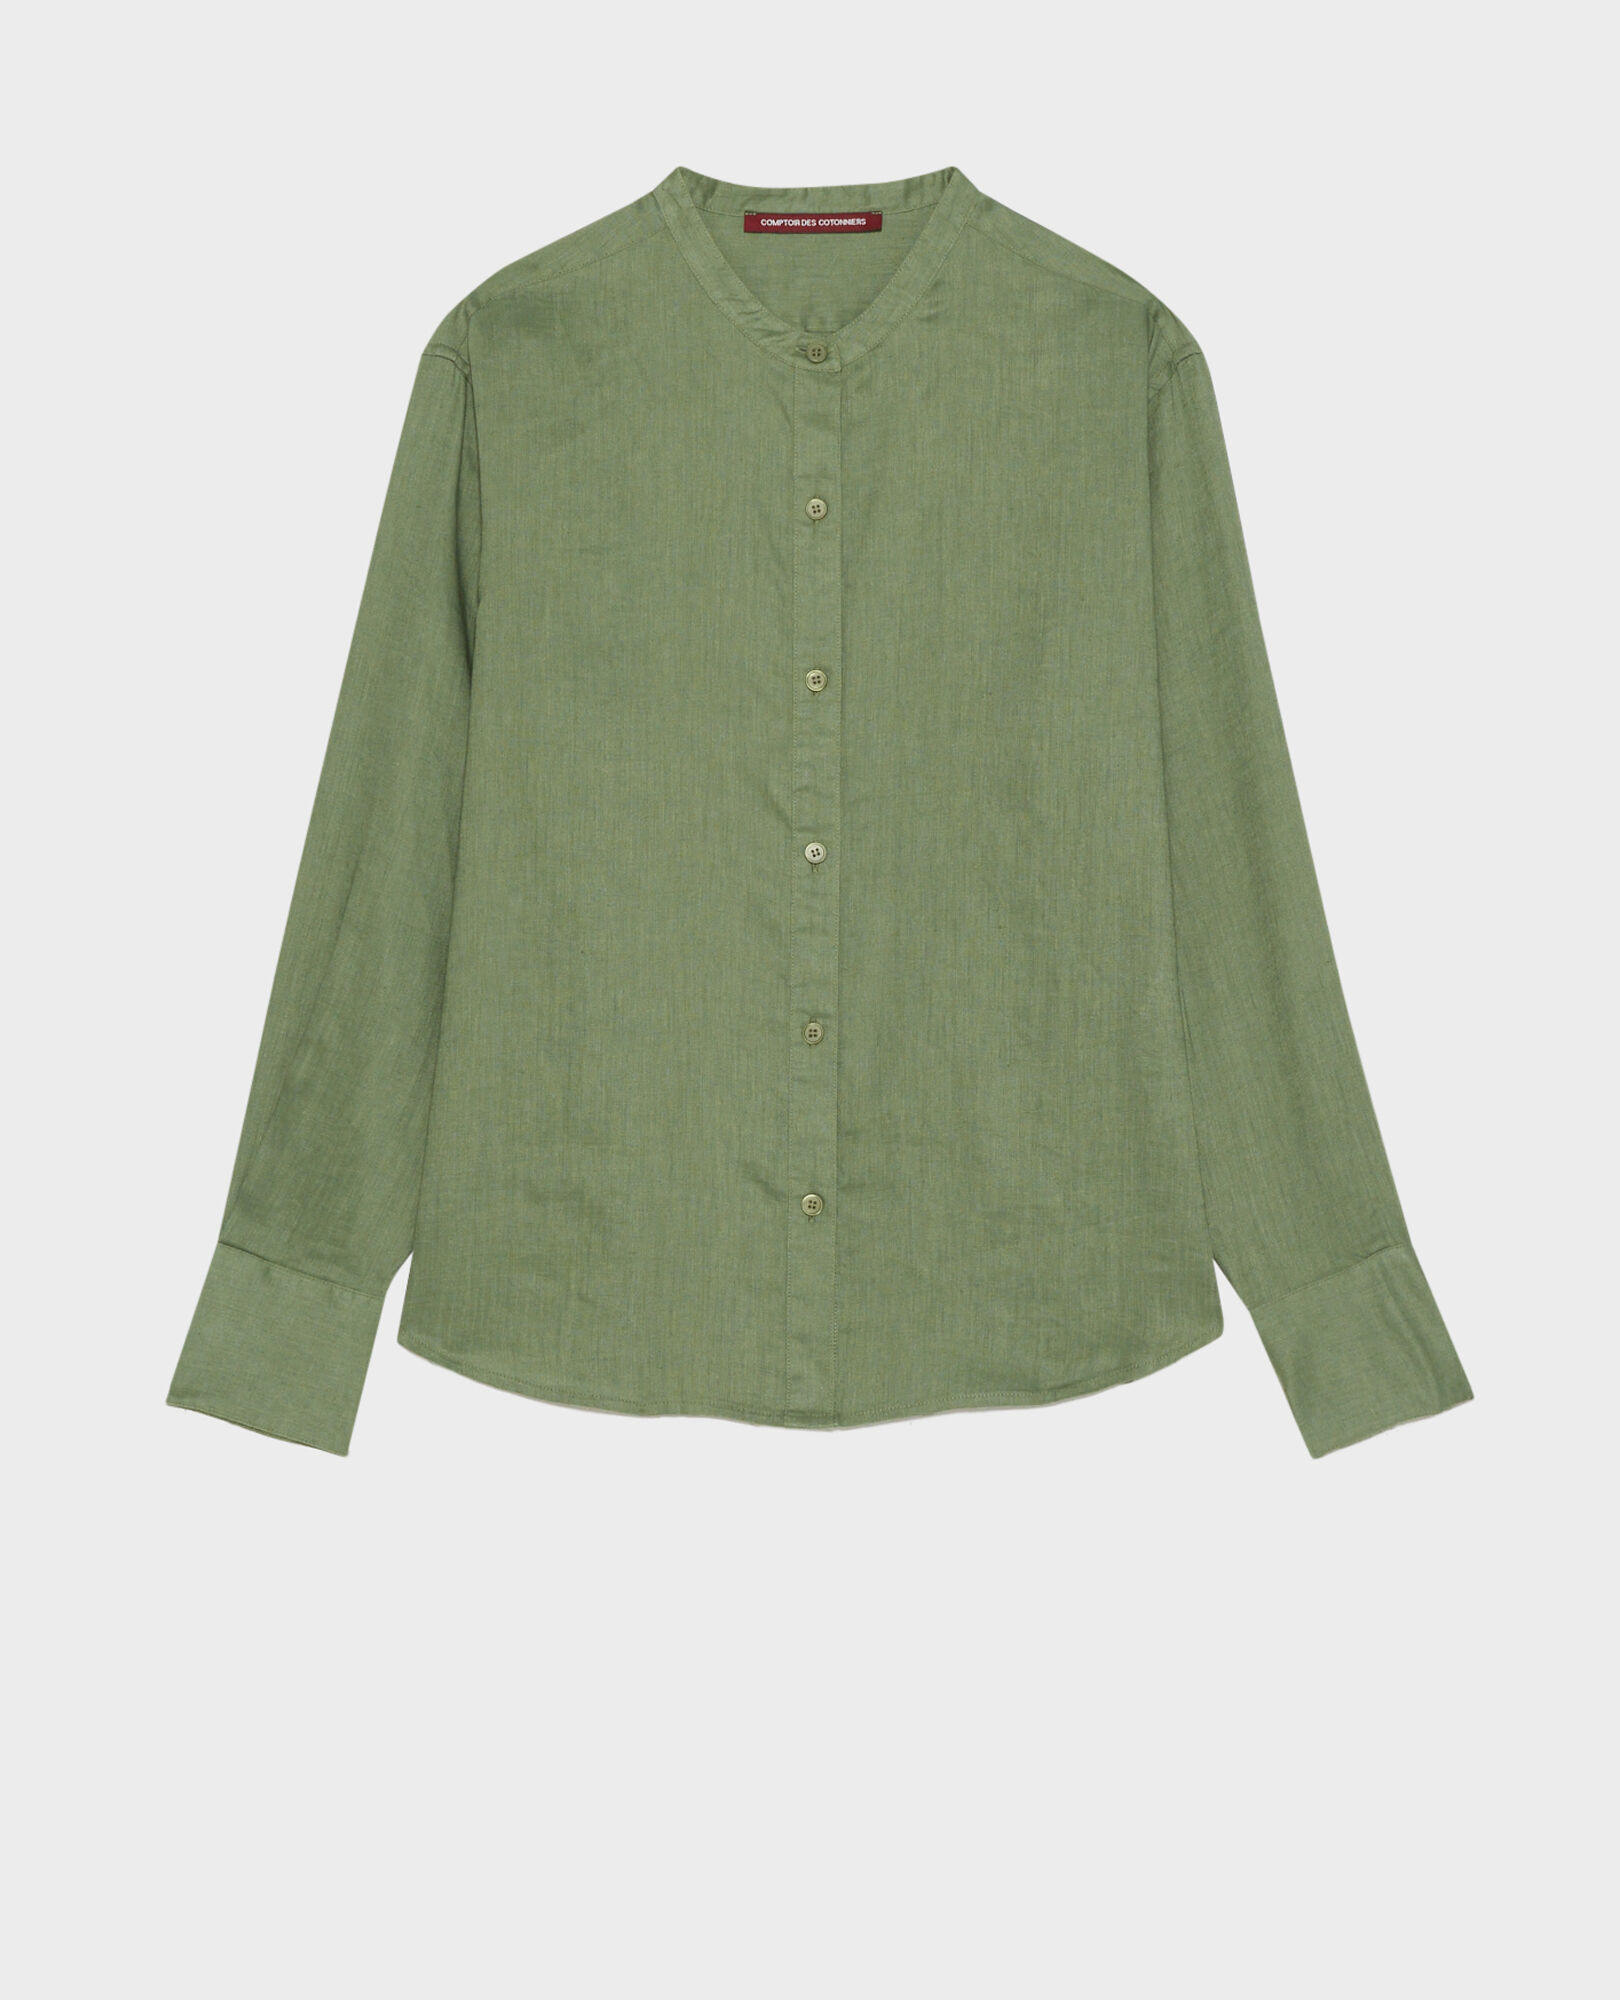 Camisa de lino sin cuello 52 green 2ssh233f04